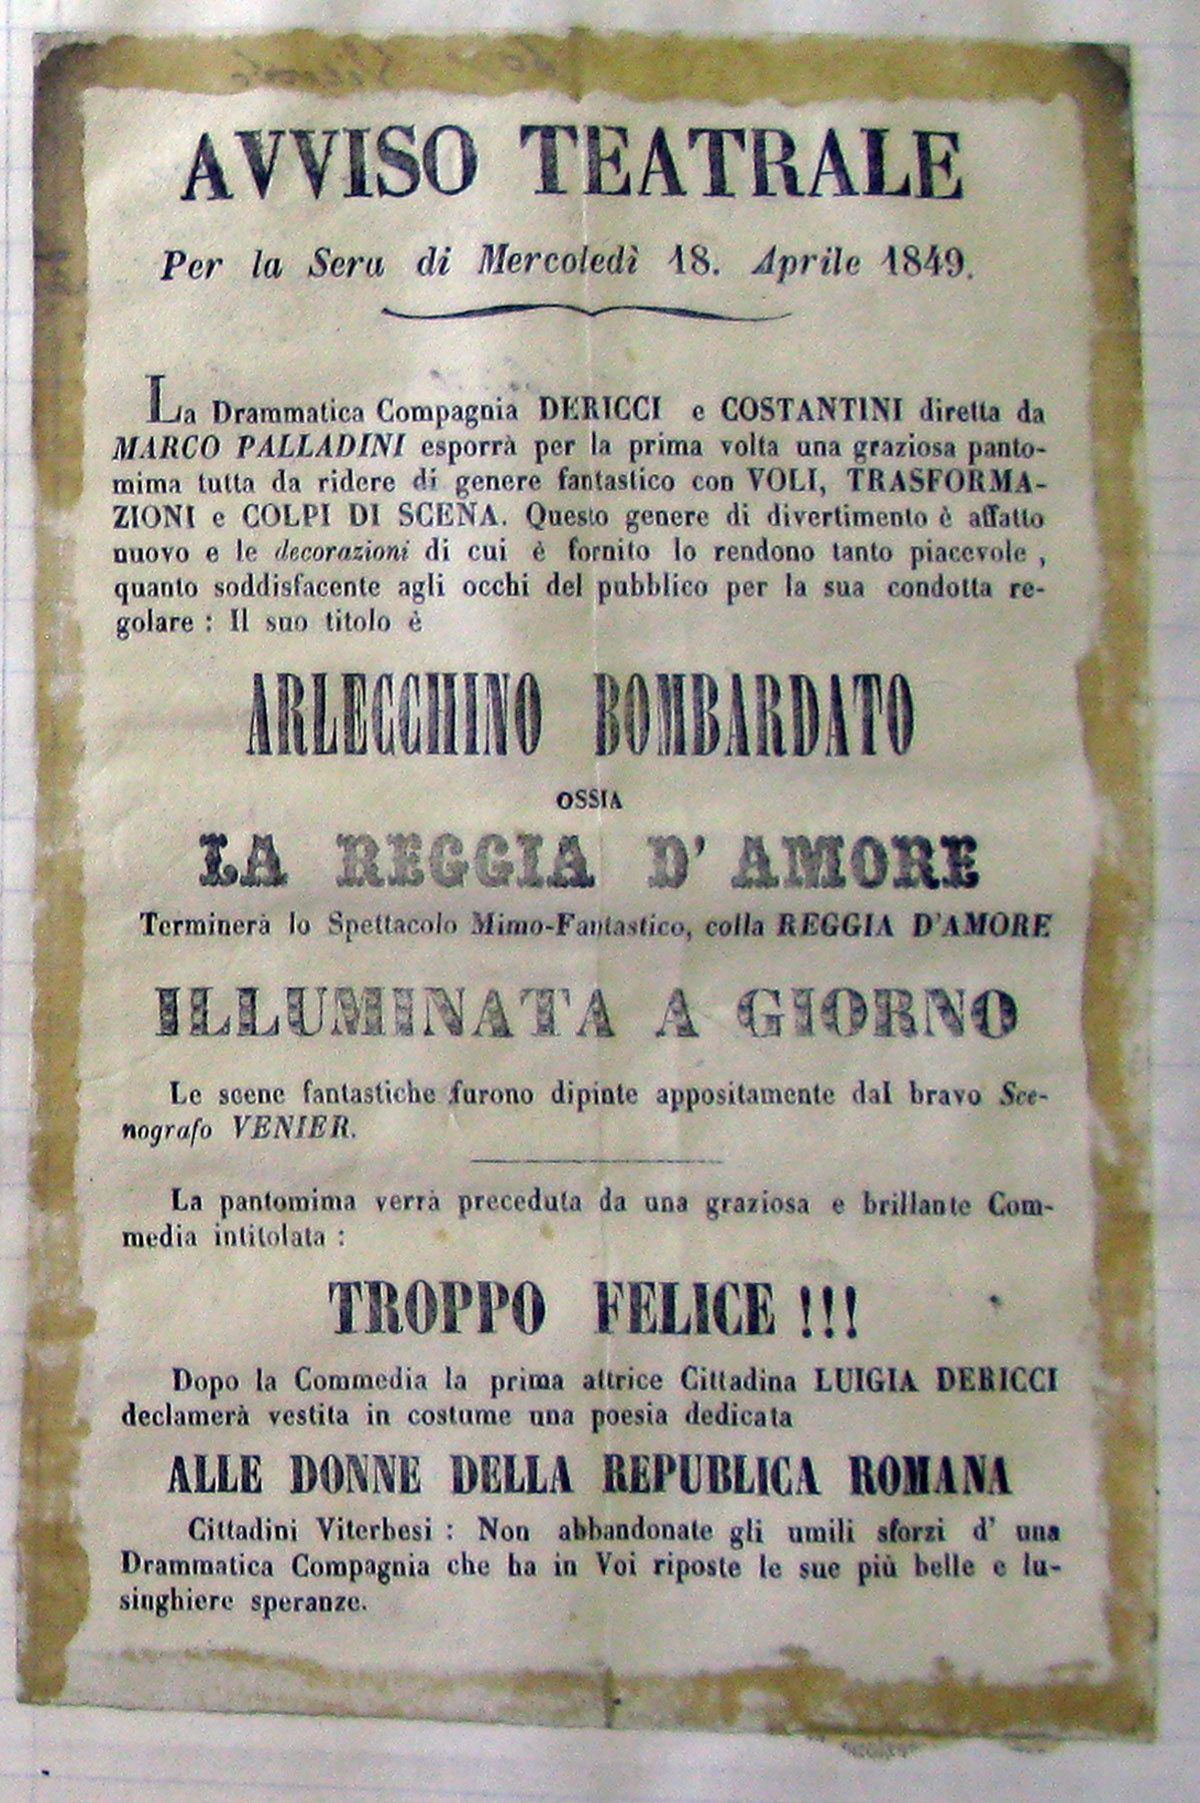 Viterbo, 1849. Alrecchino Bombardato. Fig. 1